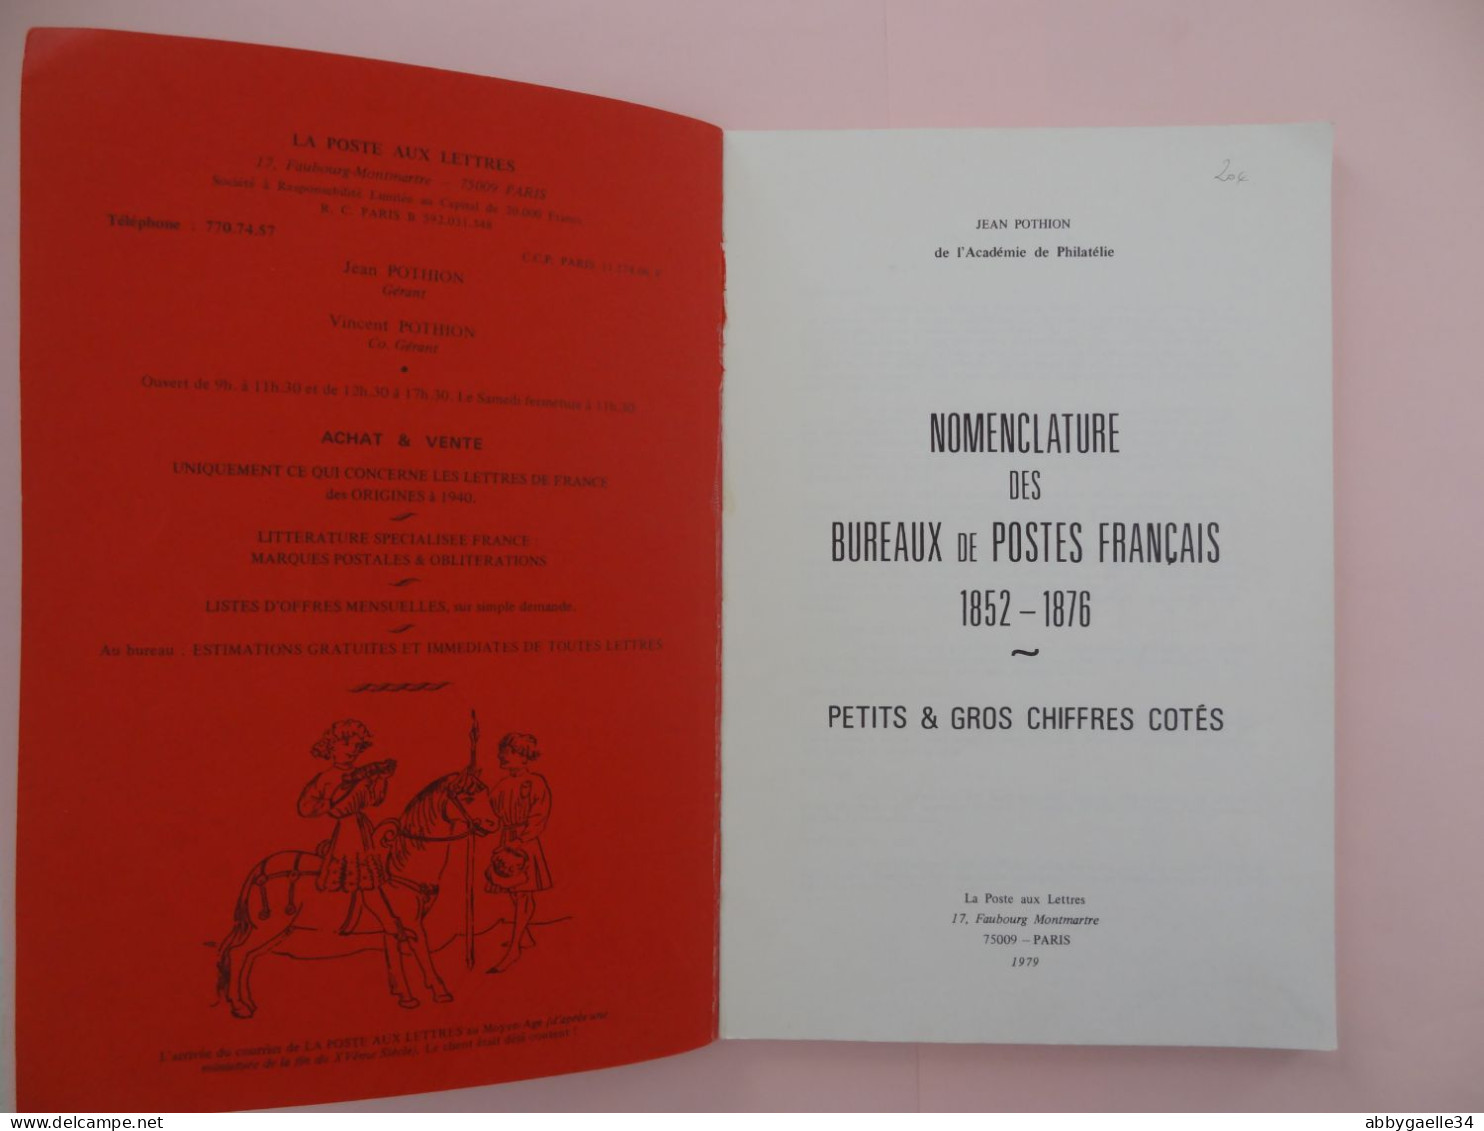 Nomenclature Des Bureaux De Postes Français 1852-1876 Petits Et Gros Chiffres  Jean Pothion La Poste Aux Lettres 1979 - France